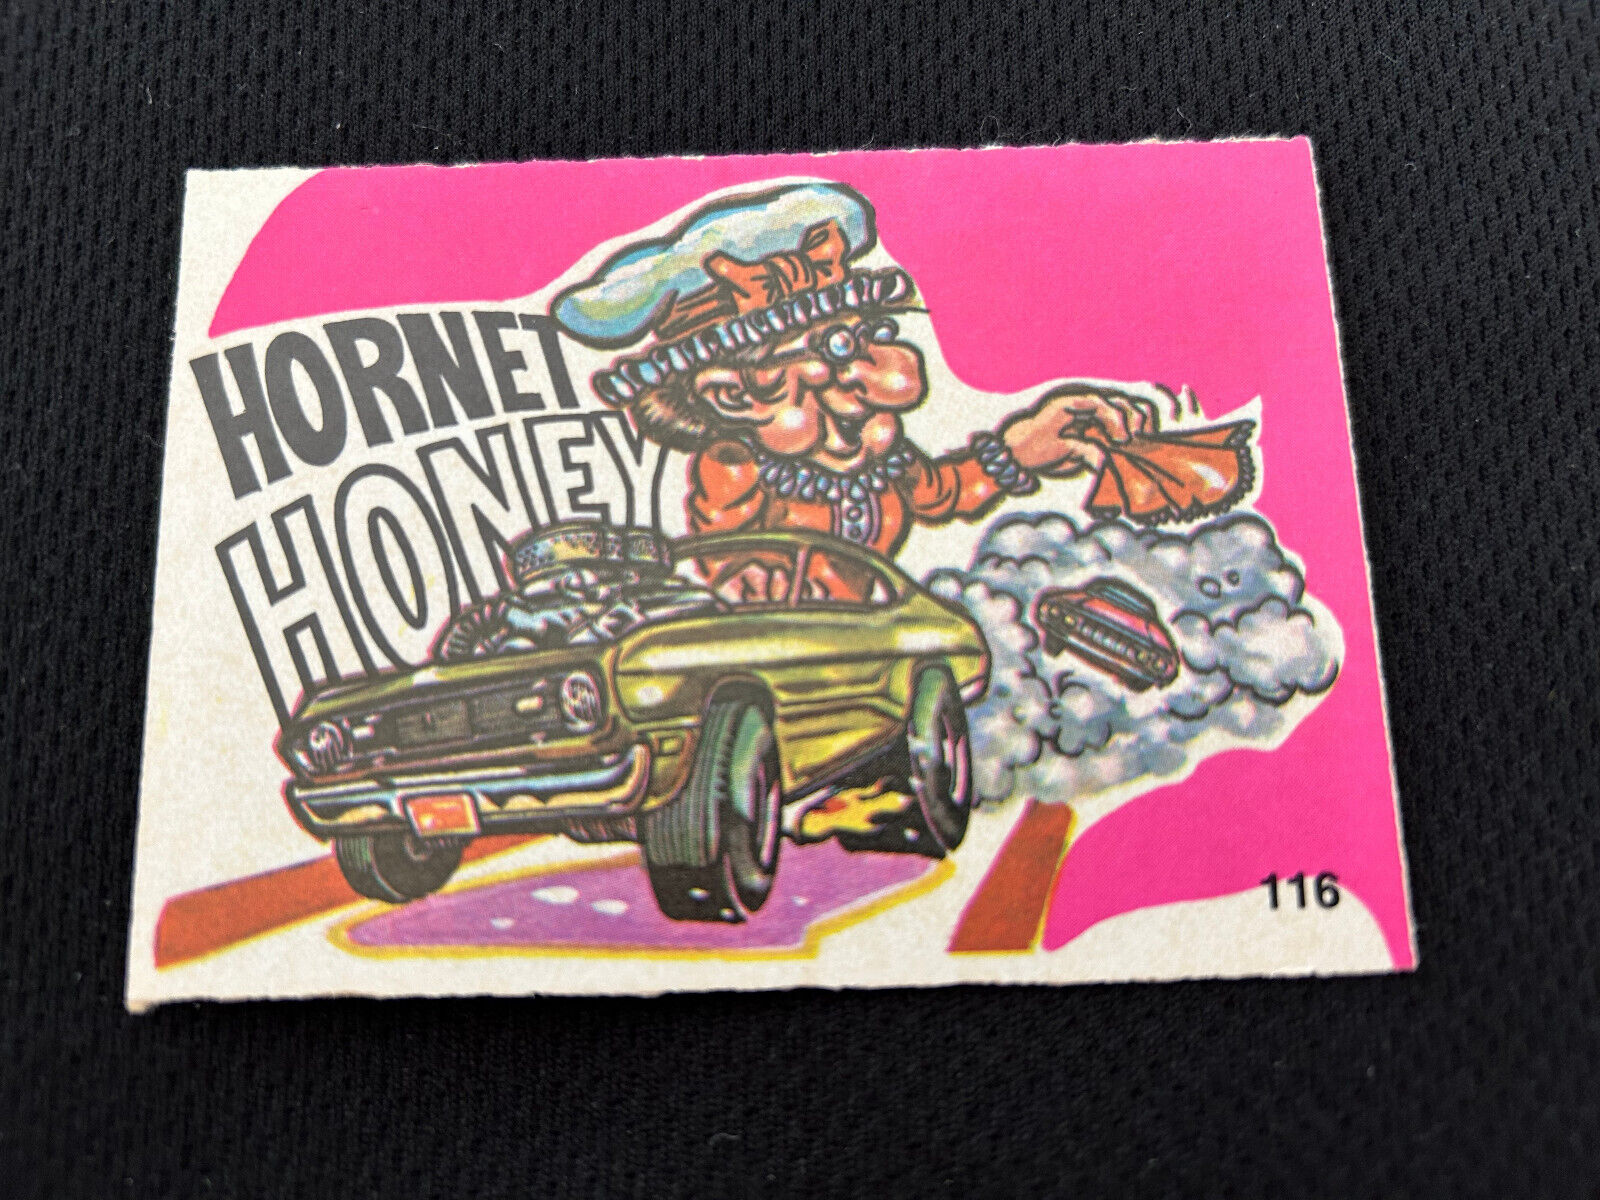 1973 FABULOUS ODD RODS #116 HORNET HONEY DONRUSS PINK NM STICKER CARD